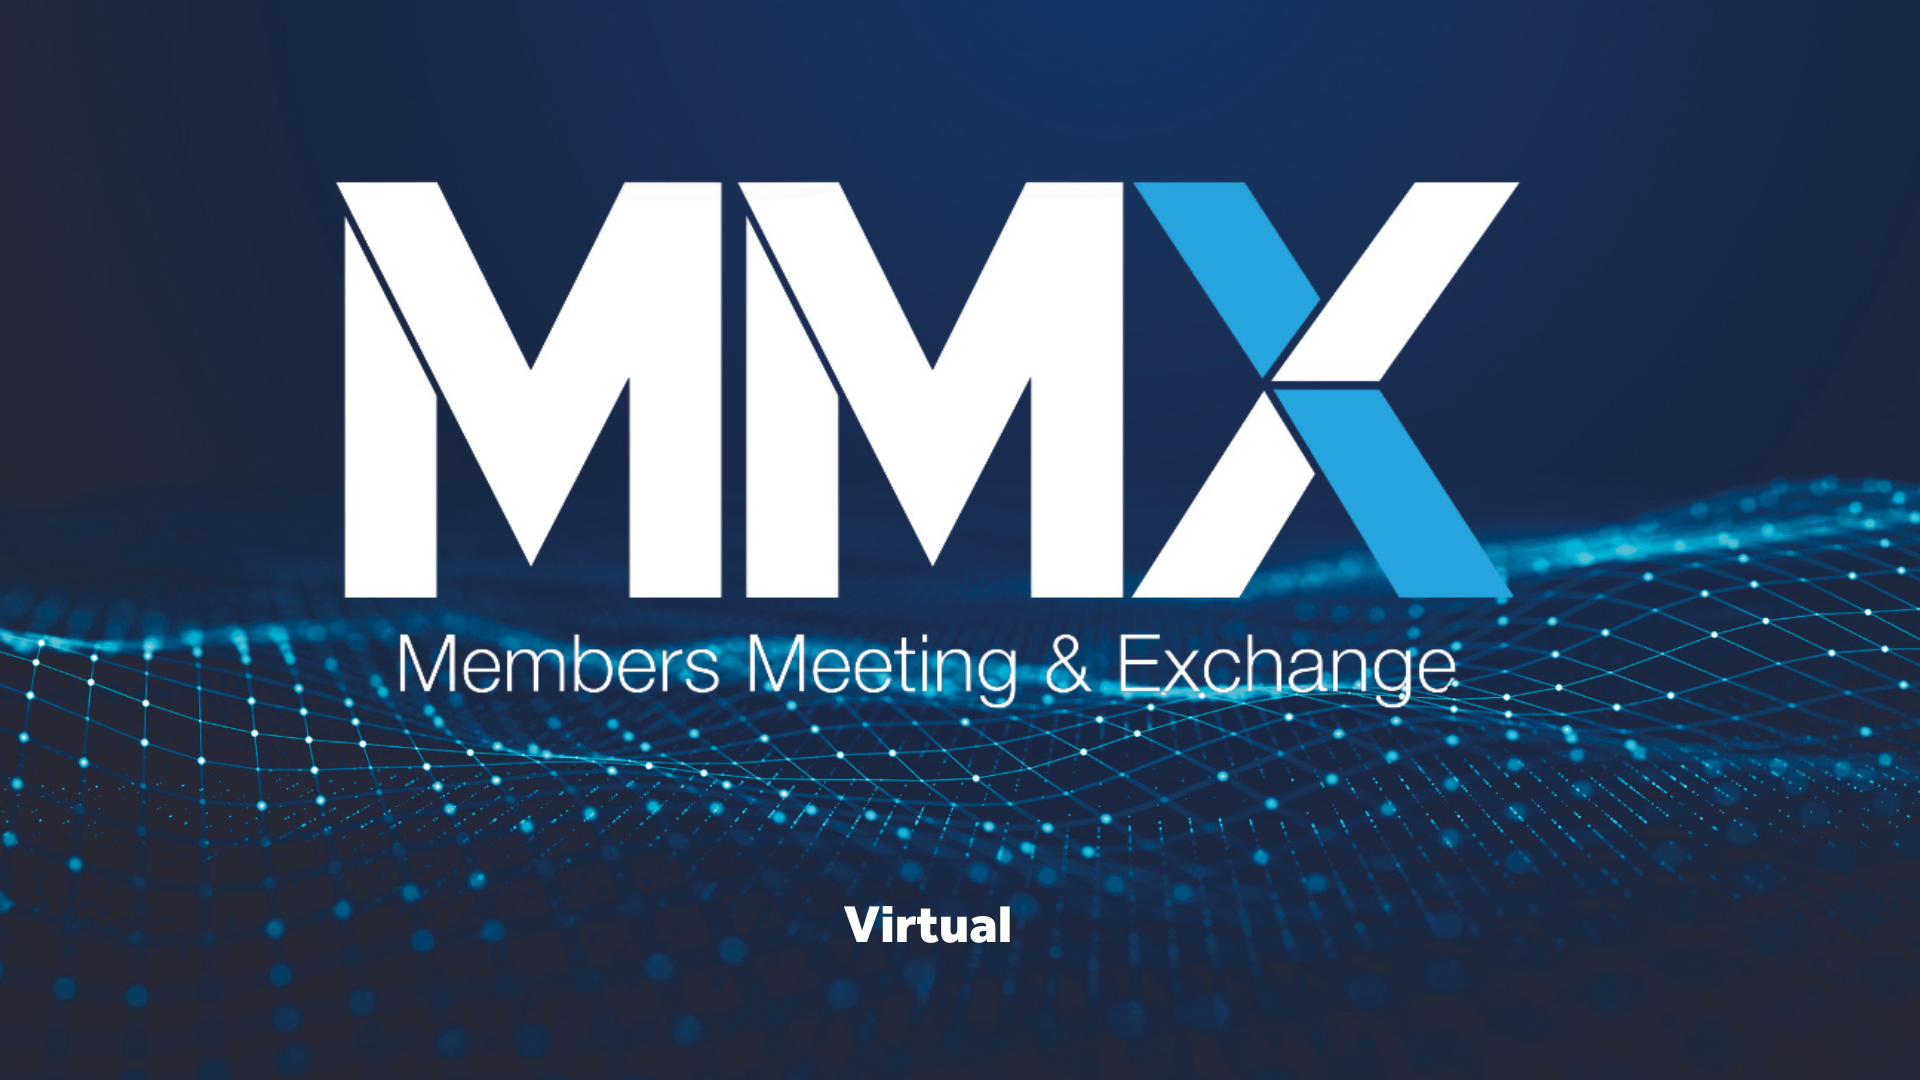 Members Meeting & Exchange - Virtual